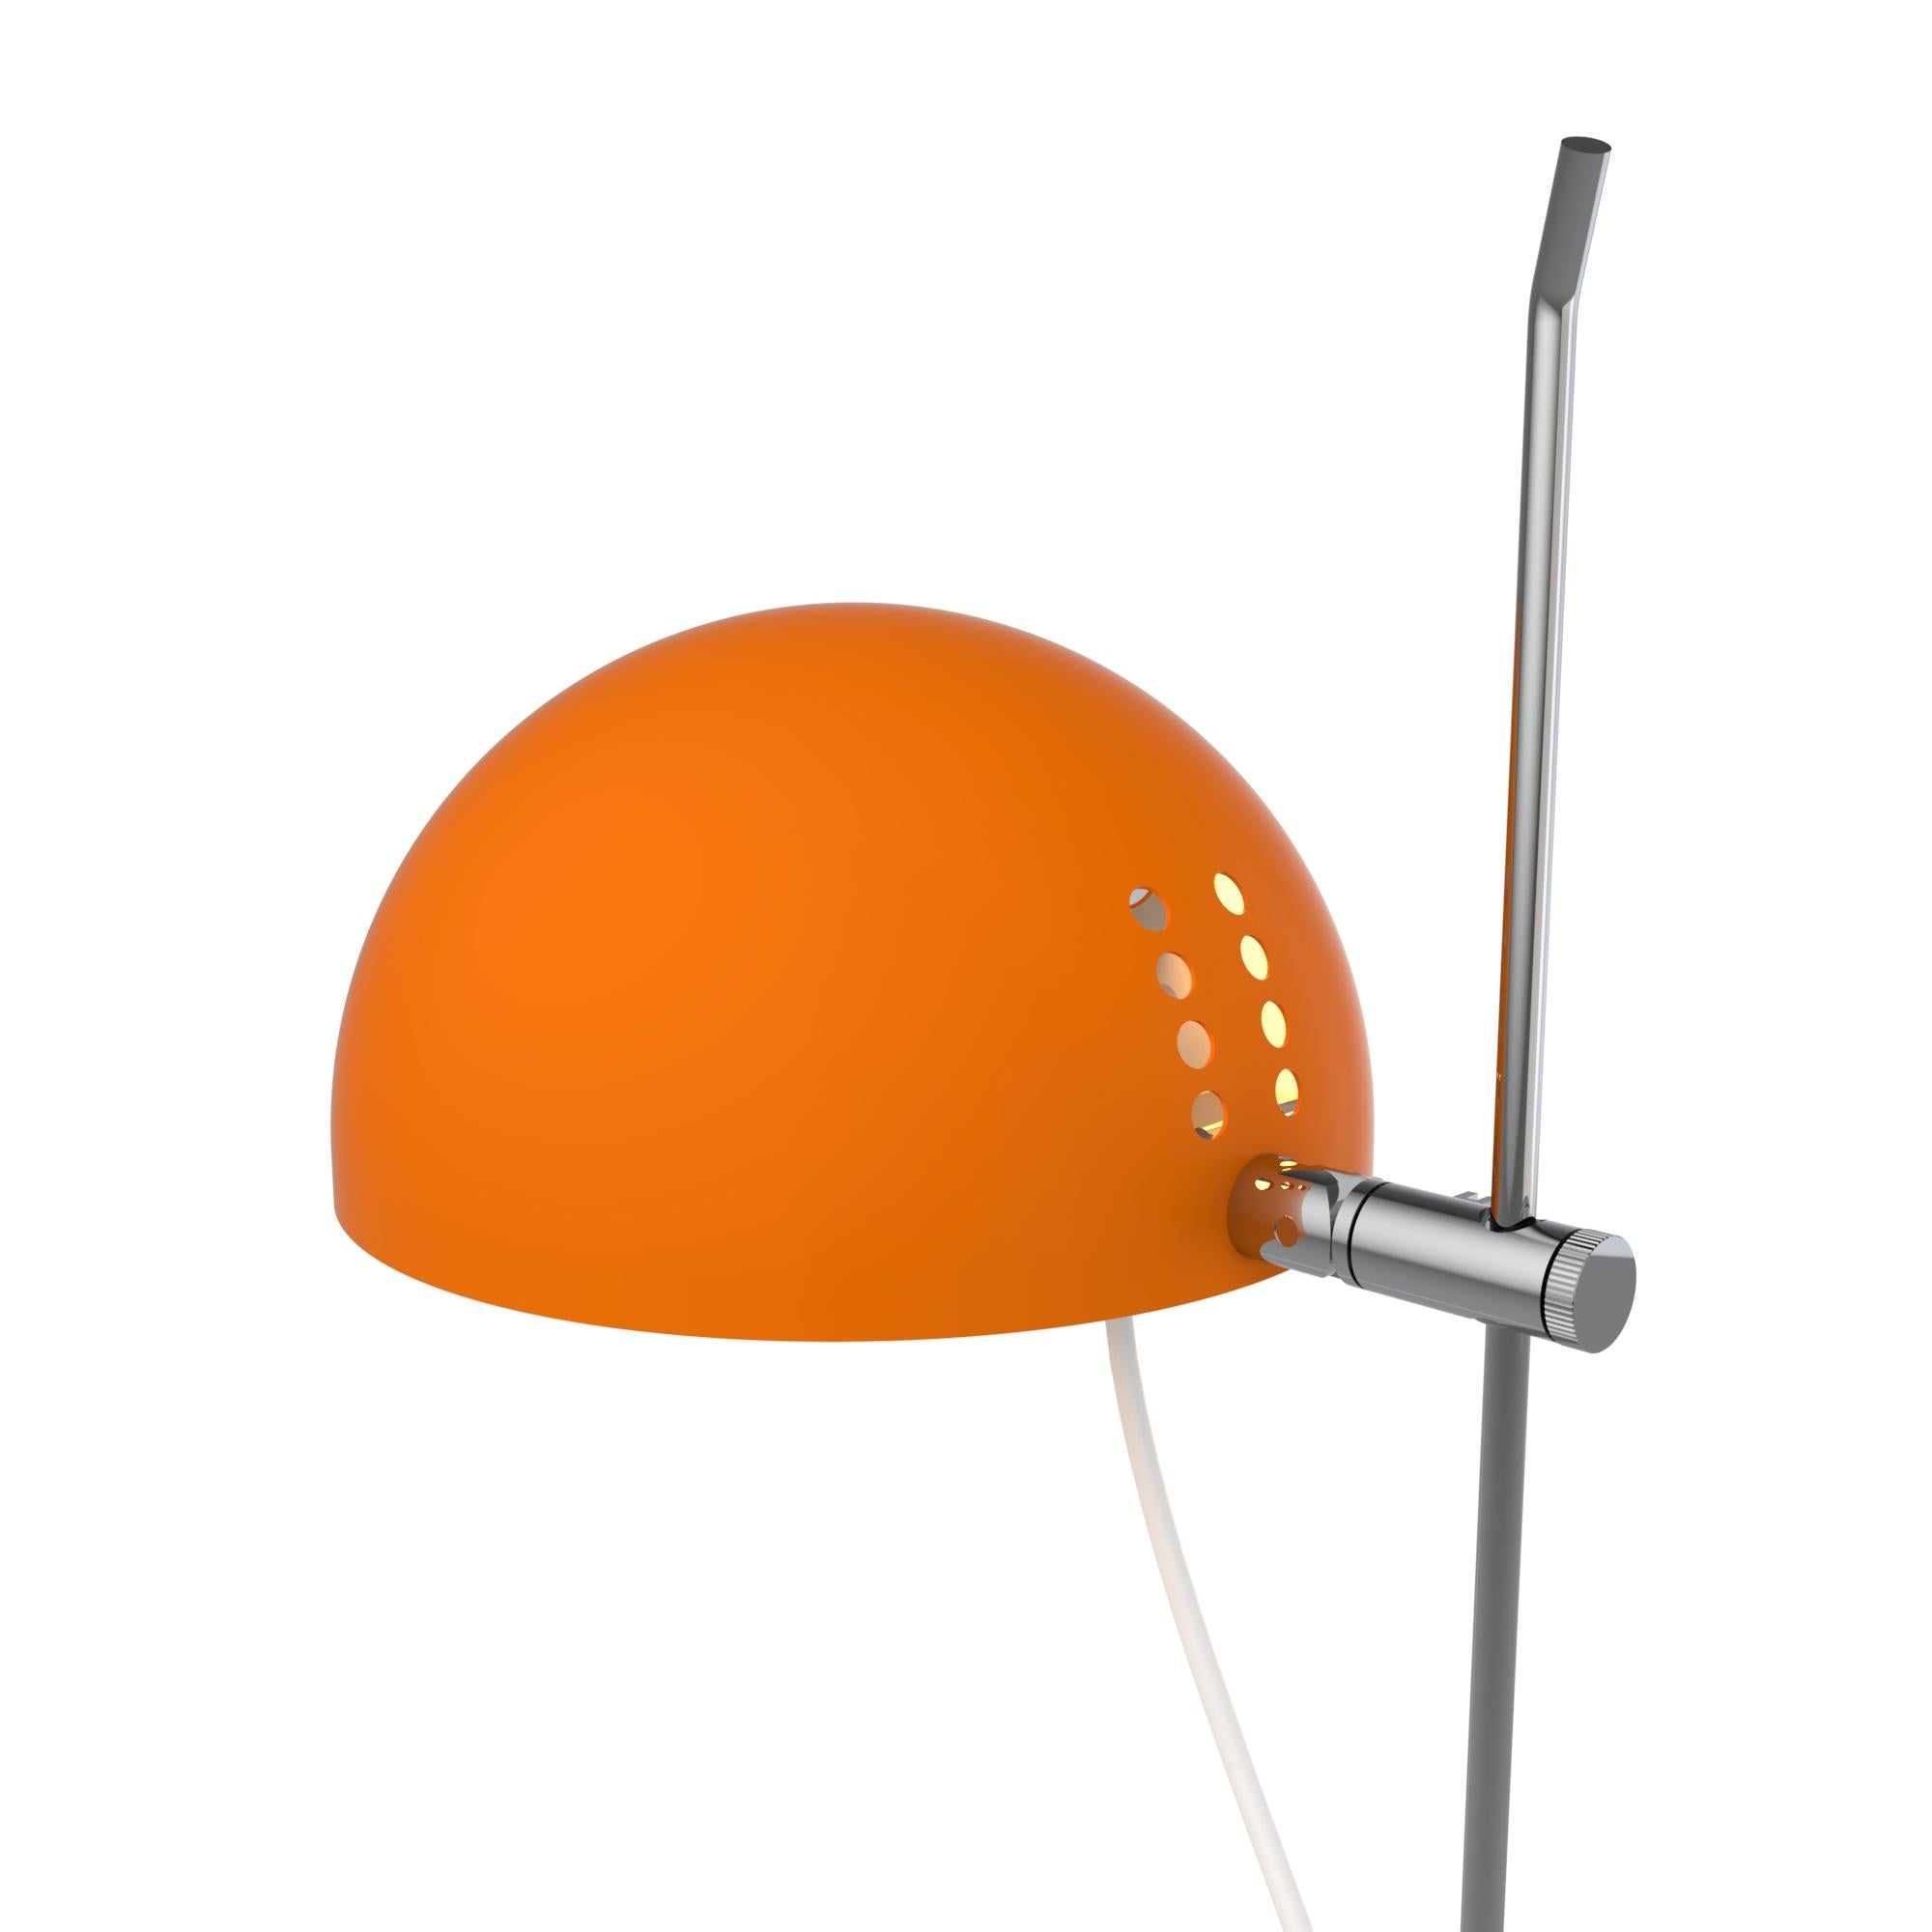 task lamp „A22F“ von Alain Richard in Orange für Disderot.

Diese neu produzierte, nummerierte Auflage aus orangefarben lackiertem Metall mit eingeschlossenem Echtheitszertifikat wird in Frankreich von Disderot mit vielen der kleinen